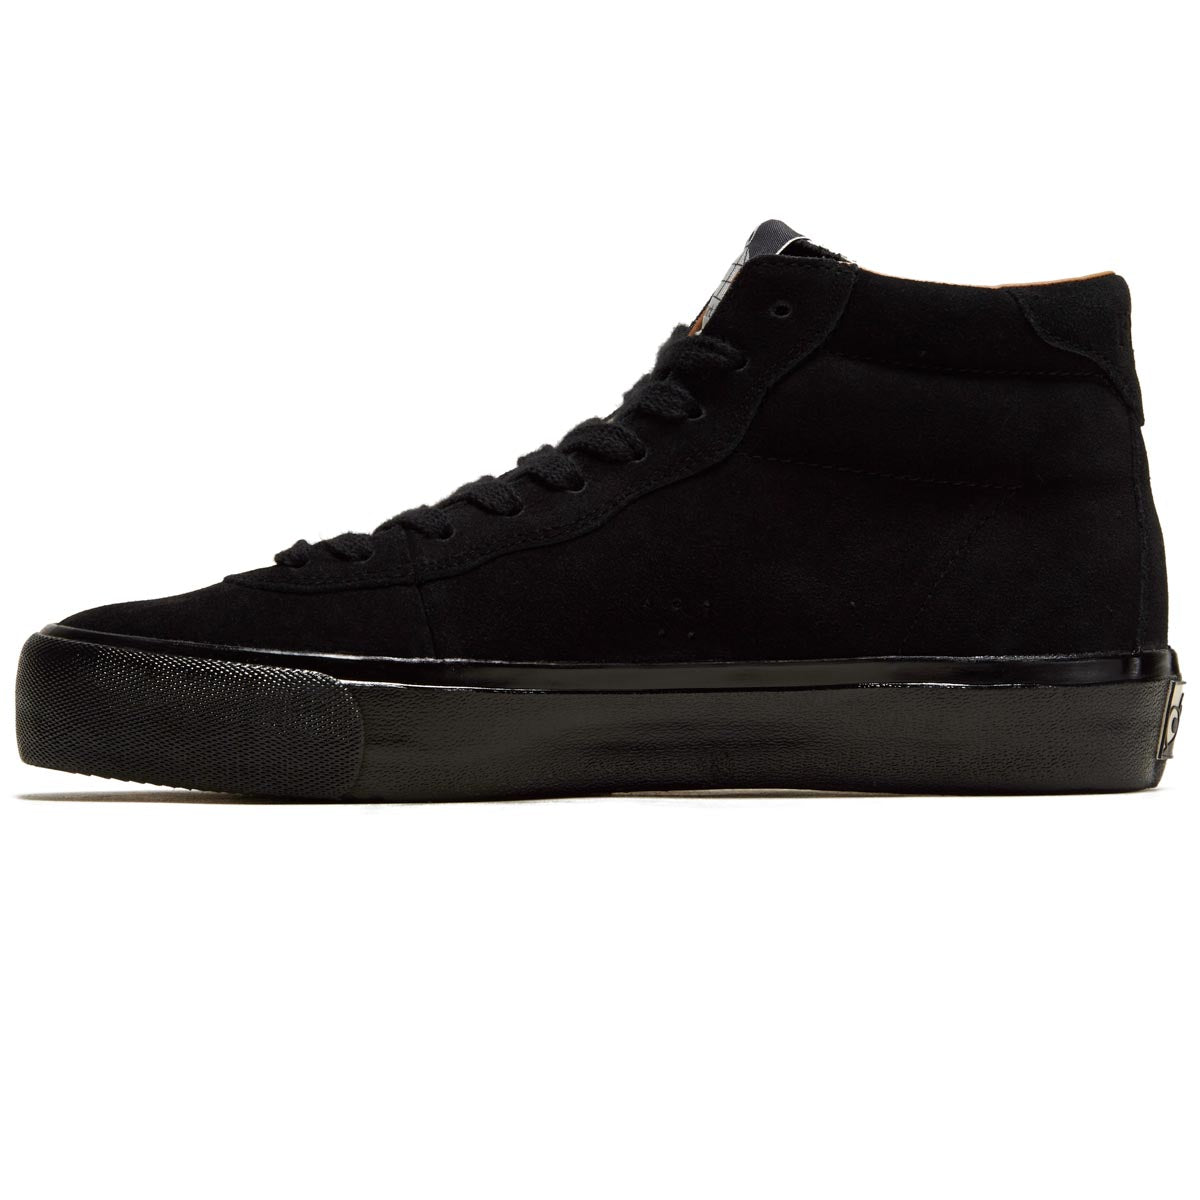 Last Resort AB VM001 Suede Hi Shoes - 3 x Black/Black image 2